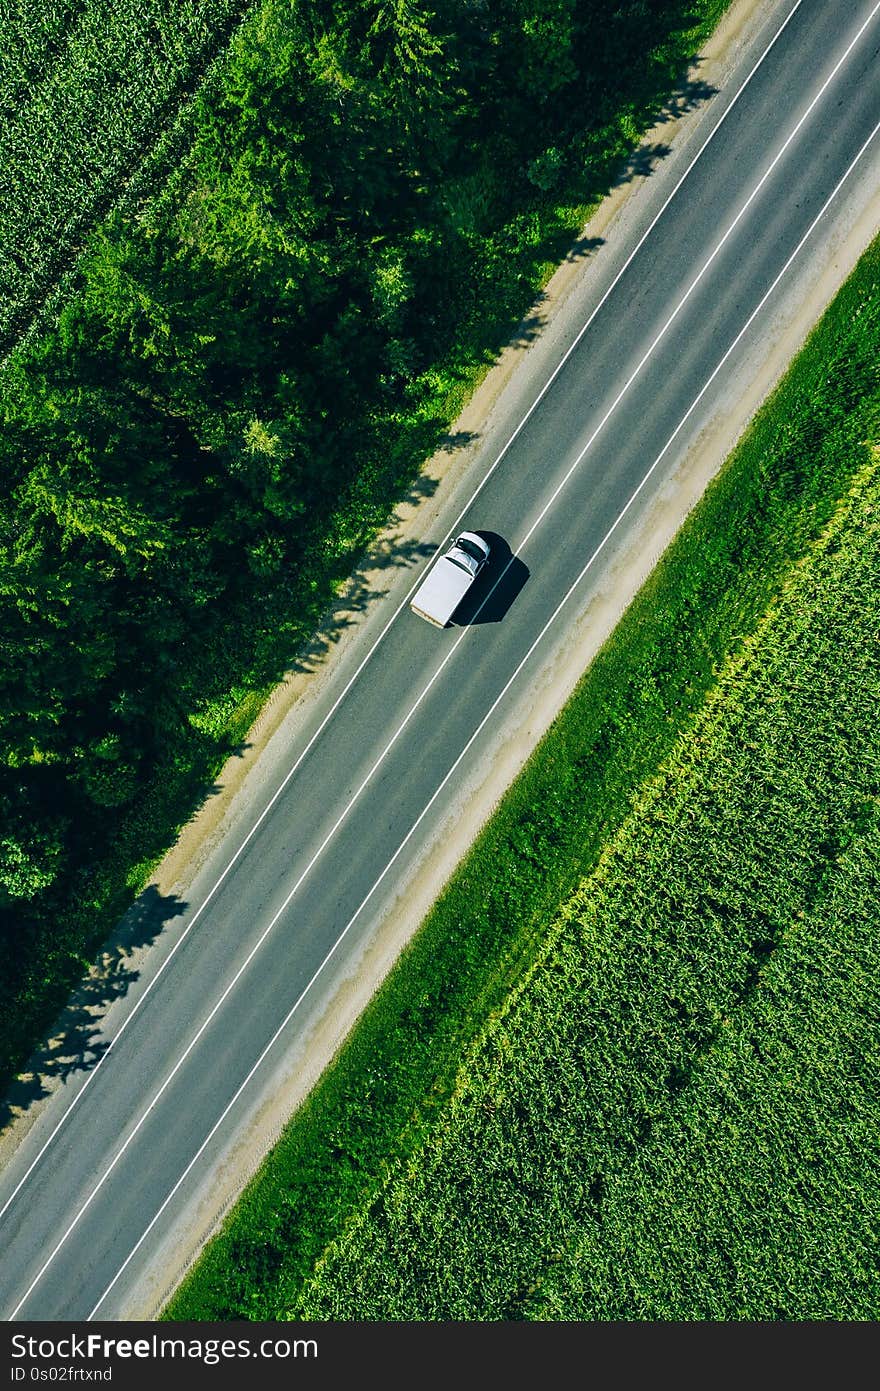 Aerial top view of a rural asphalt road through a green corn field in summer